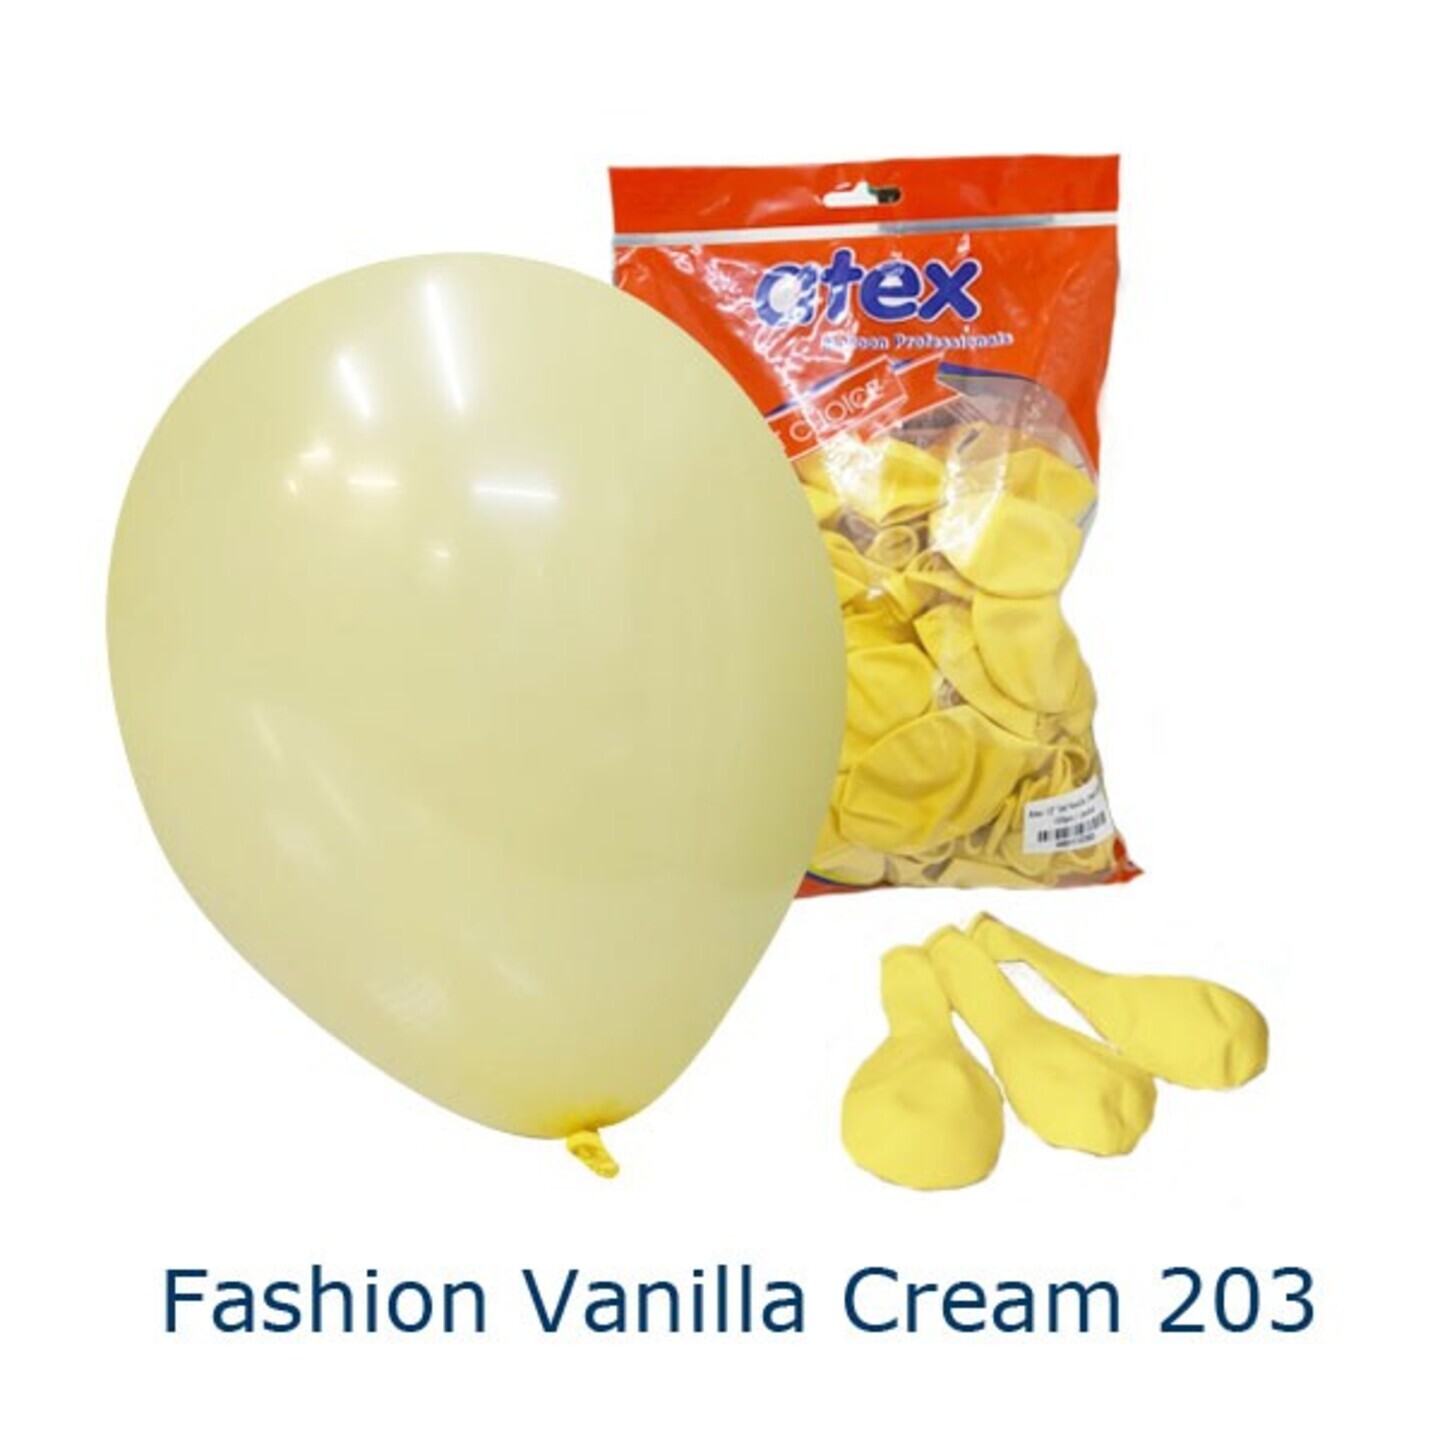 Fashion Vanilla Cream 203